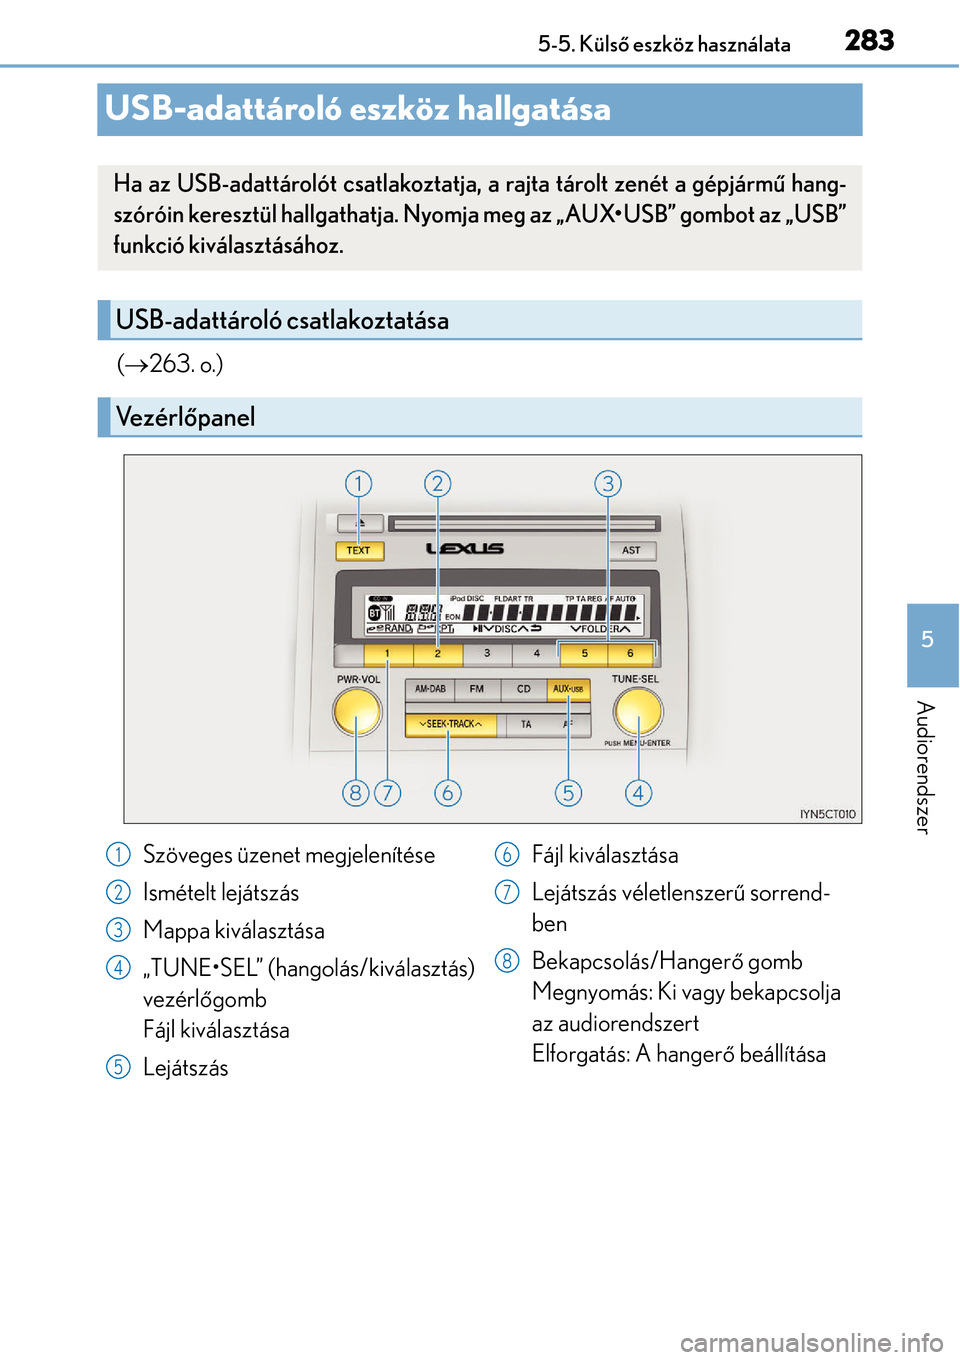 Lexus CT200h 2014  Kezelési útmutató (in Hungarian) 283
5
5-5. Küls
ő eszköz használata
Audiorendszer
USB-adattároló eszköz hallgatása
( 263. o.)
Ha az USB-adattárolót csatlakoztat ja, a rajta tárolt zenét a gépjármű hang-
szóróin k